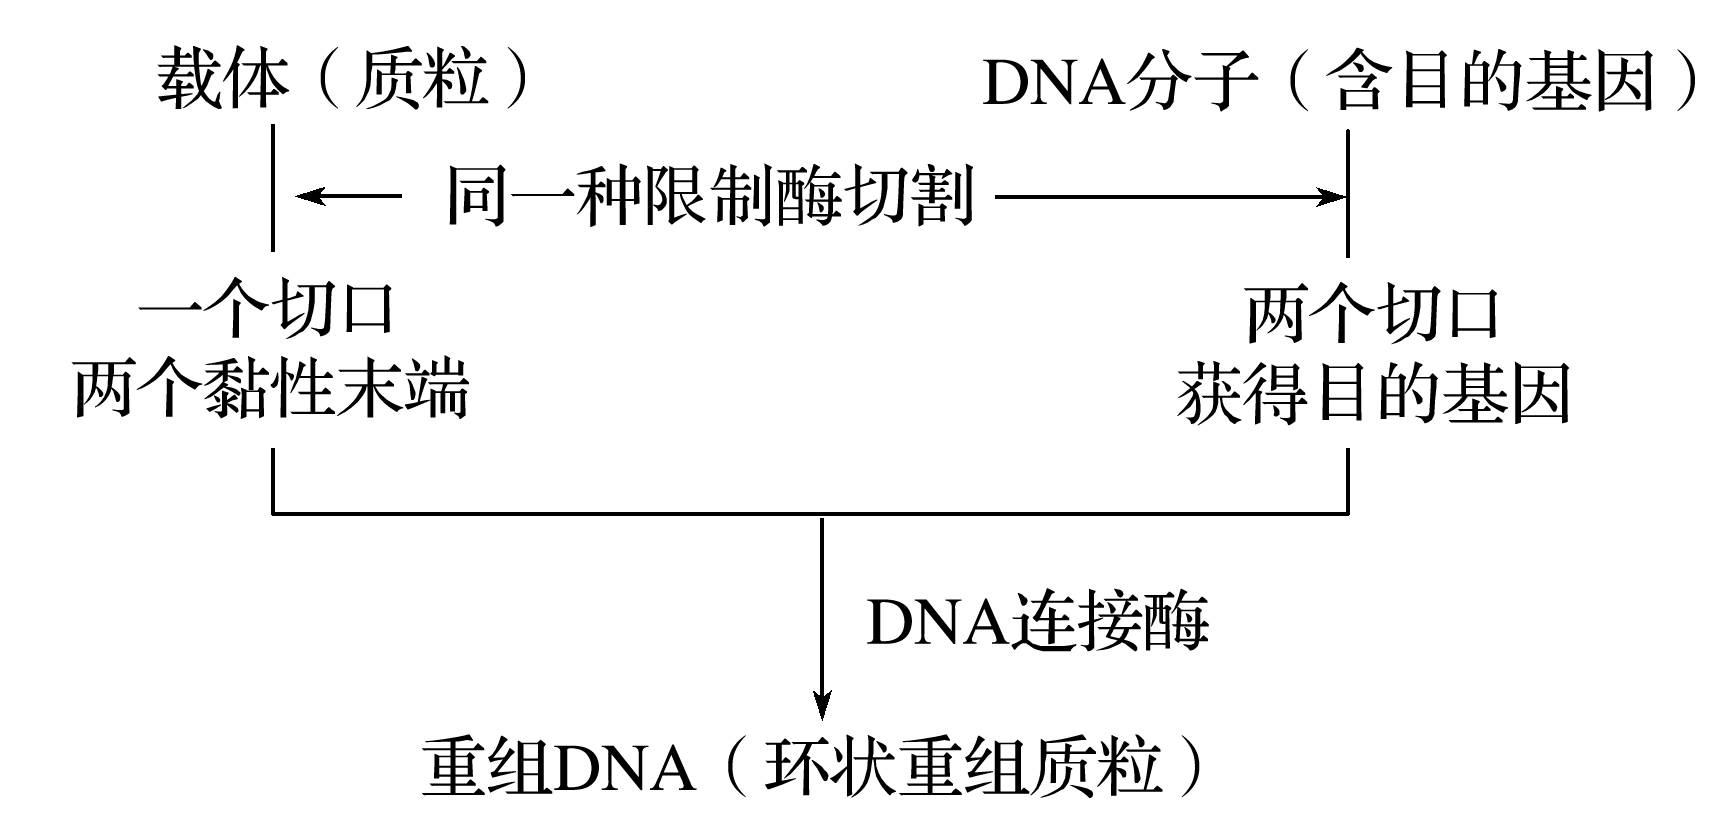 (3)基因表达载体的构建过程